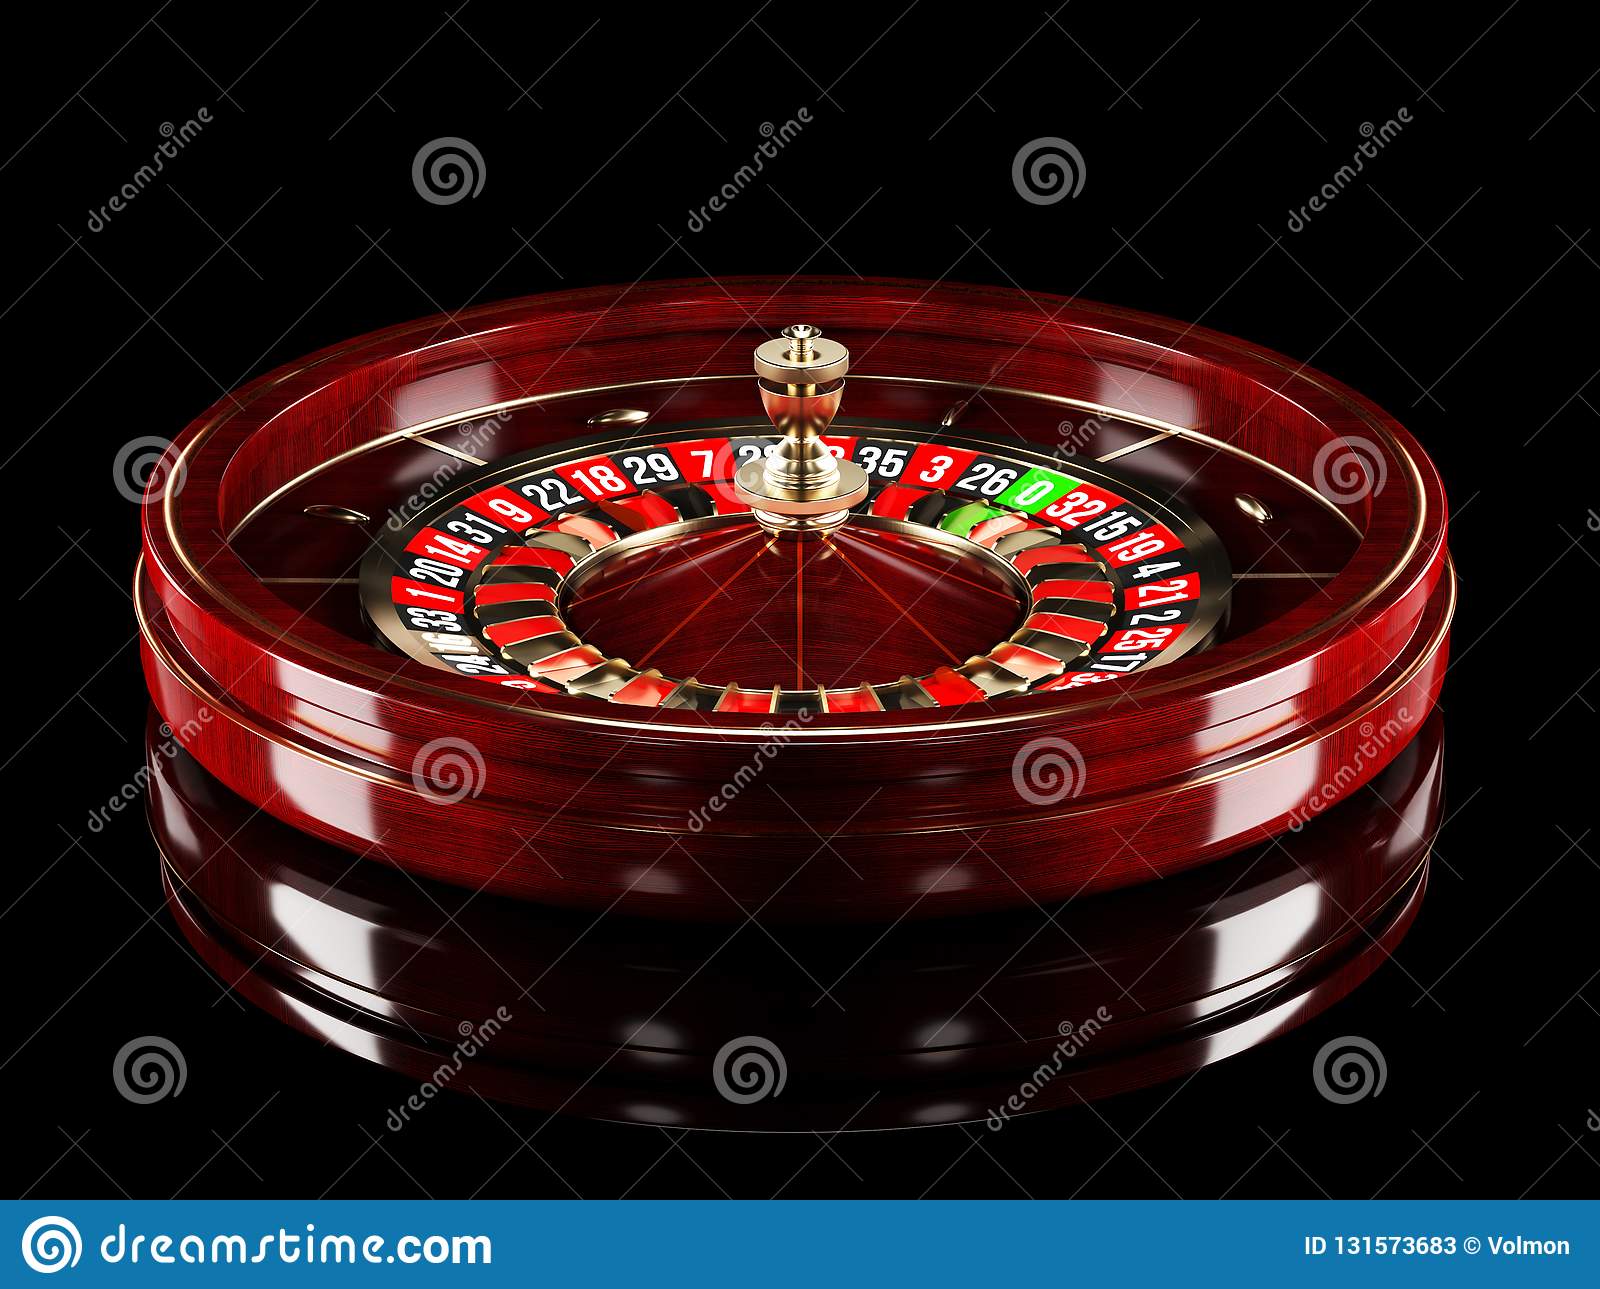 21.com casino canada